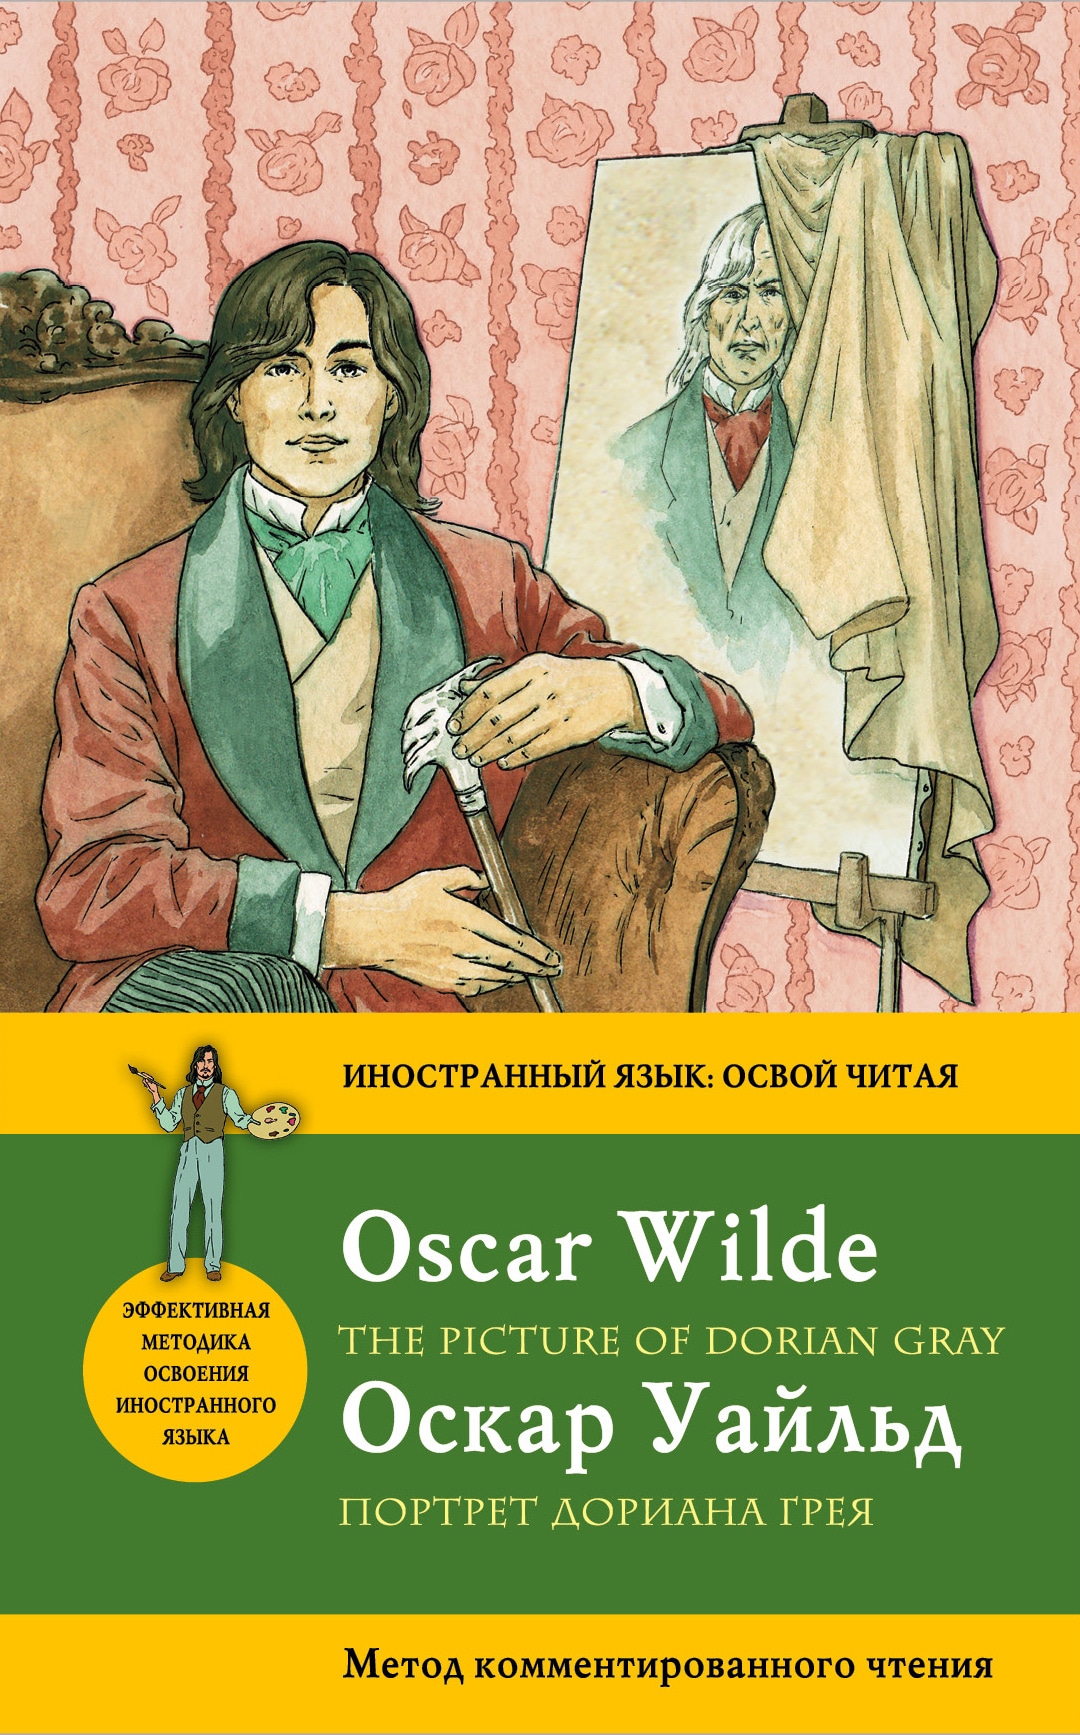 Портрет Дориана Грея= The Picture of Dorian Gray. Метод комментированного чтения